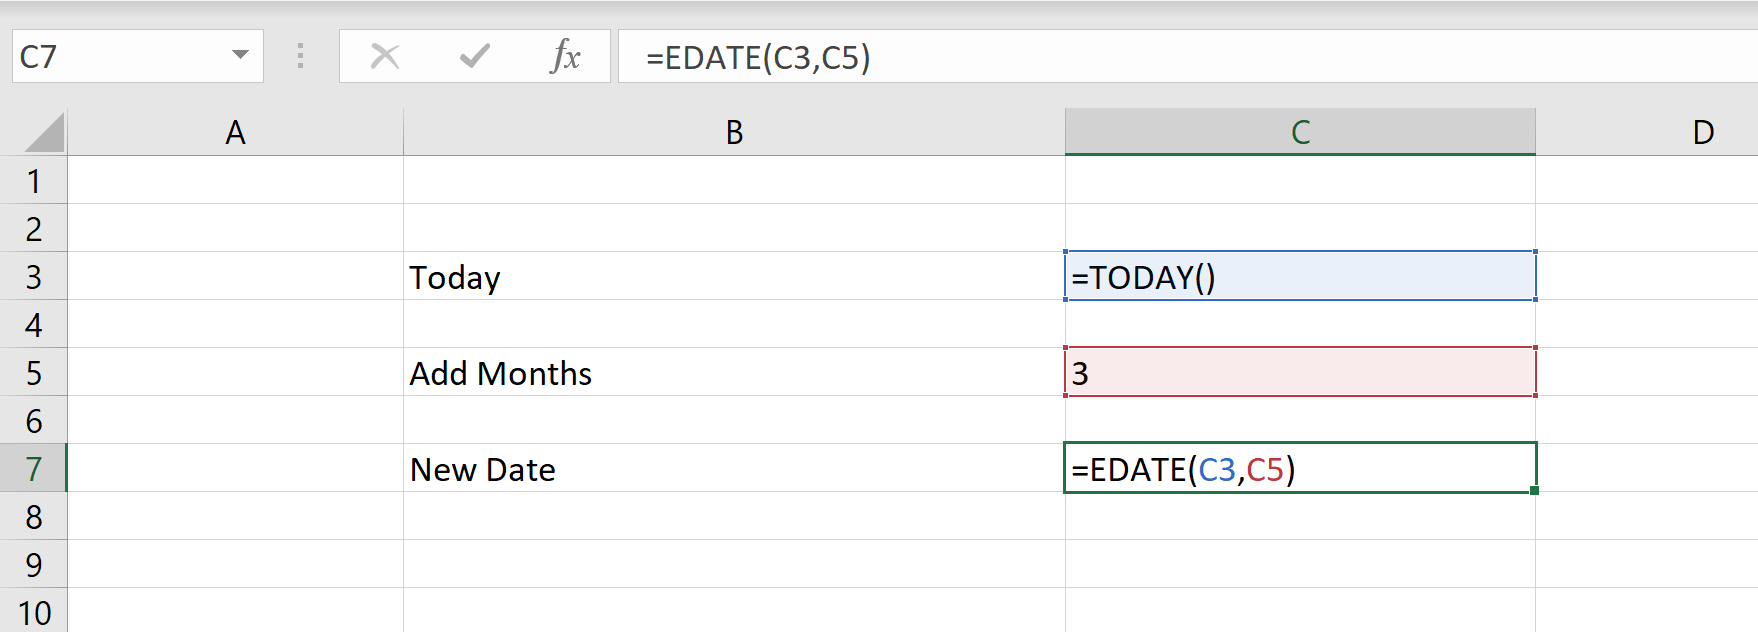 Excelで日付に1か月を追加するにはどうすればよいですか?